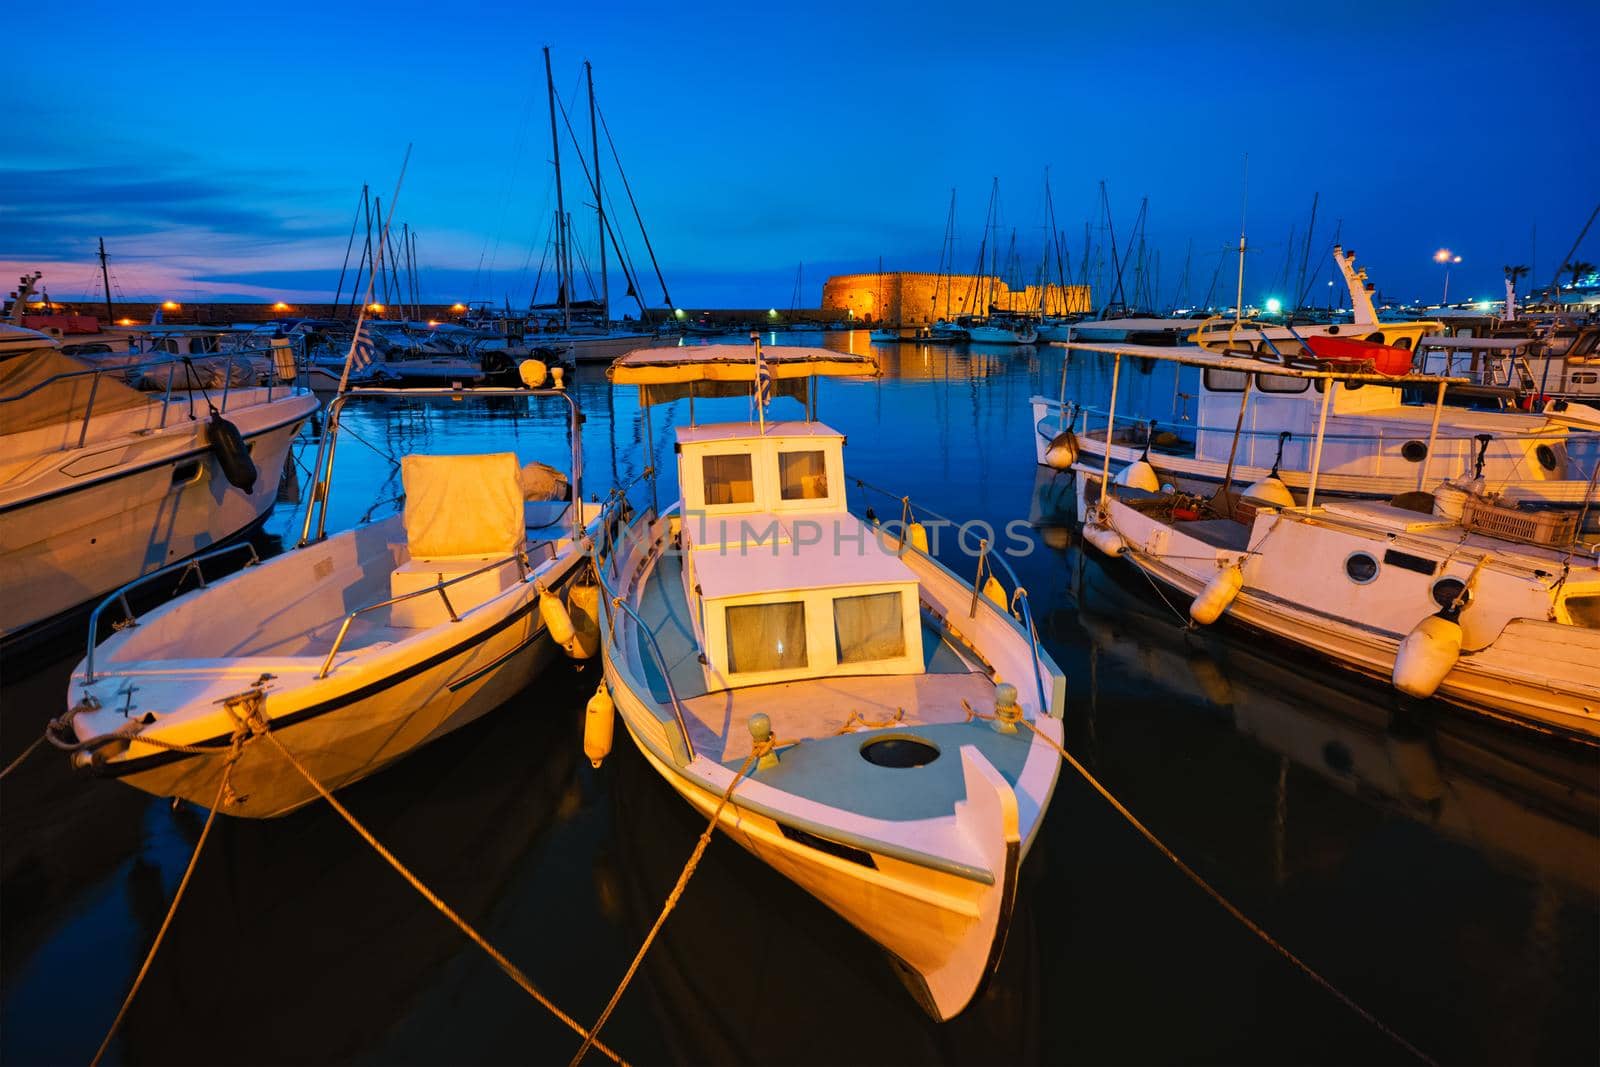 Venetian Fort castle in Heraklion and moored Greek fishing boats in port, Crete Island, Greece in twilight